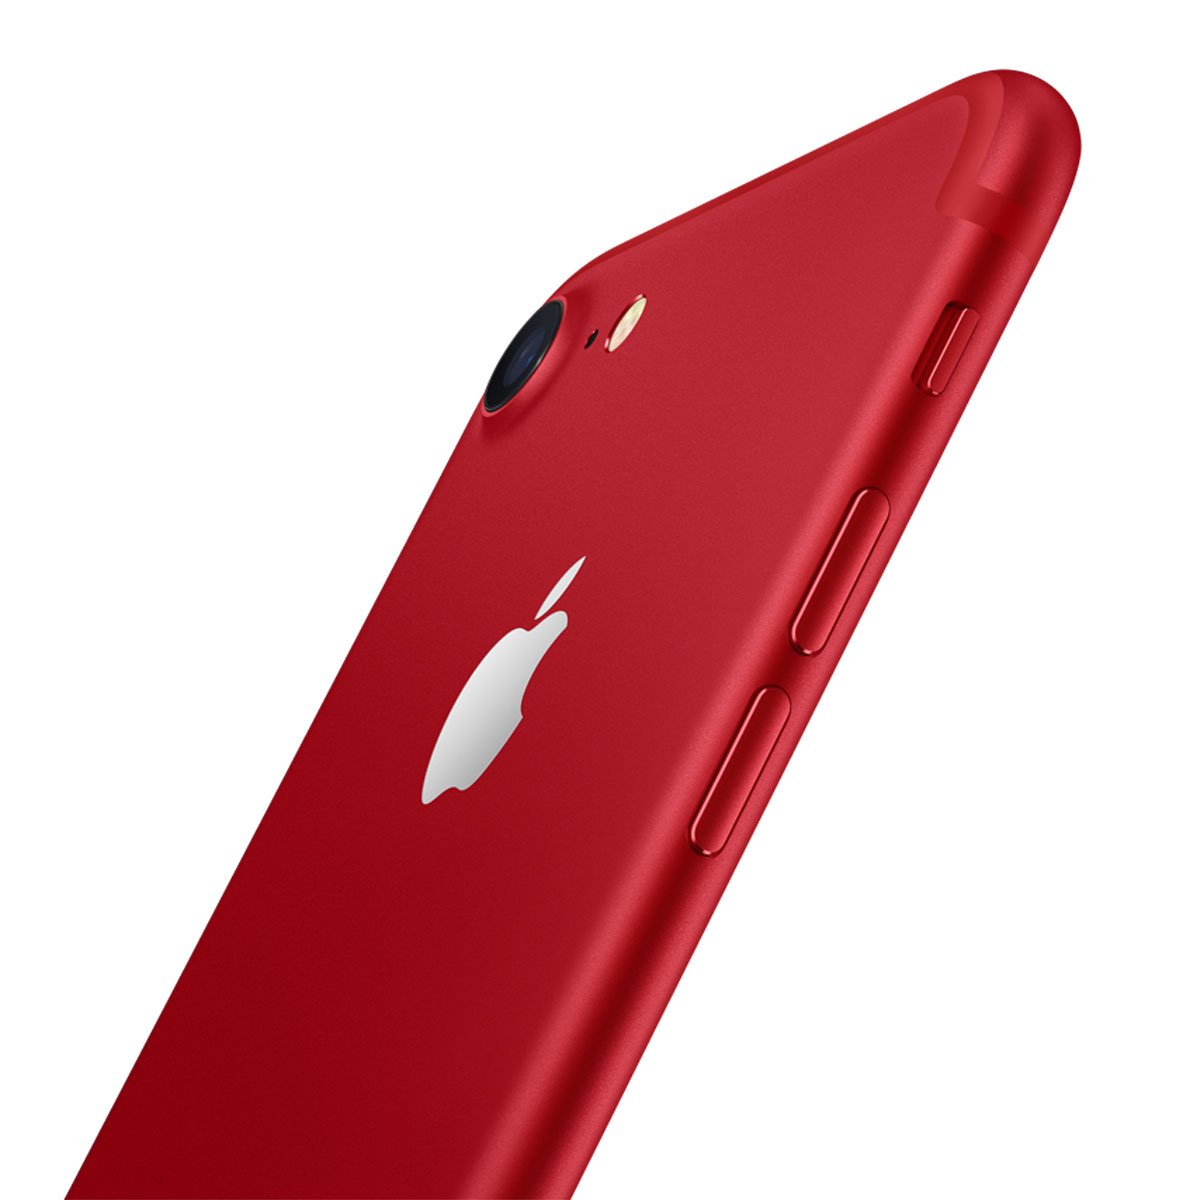 Amigo Kit Iphone 7 Plus Rojo 256 Gb